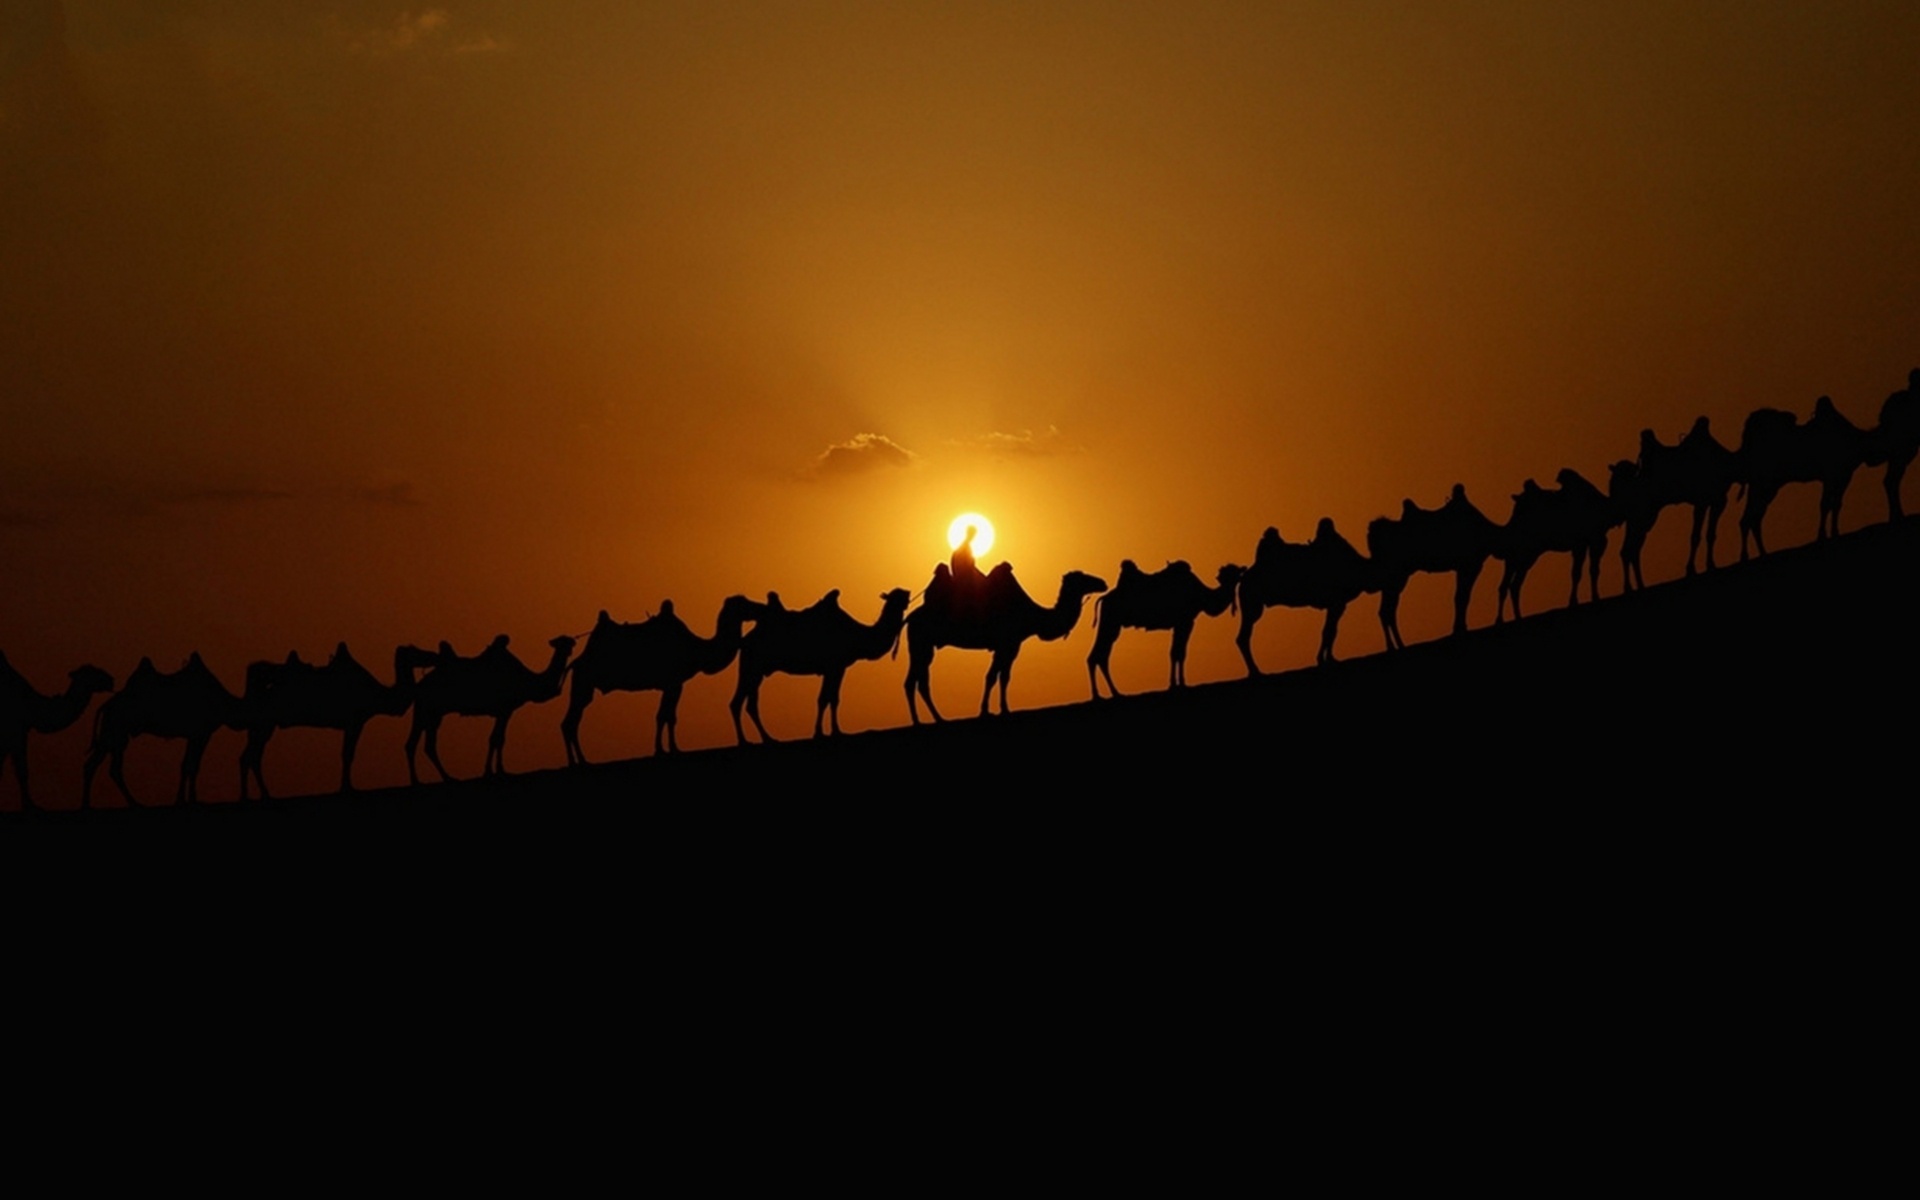 Караван караванный. Картинка Караван верблюдов в пустыне. Верблюд в пустыне.